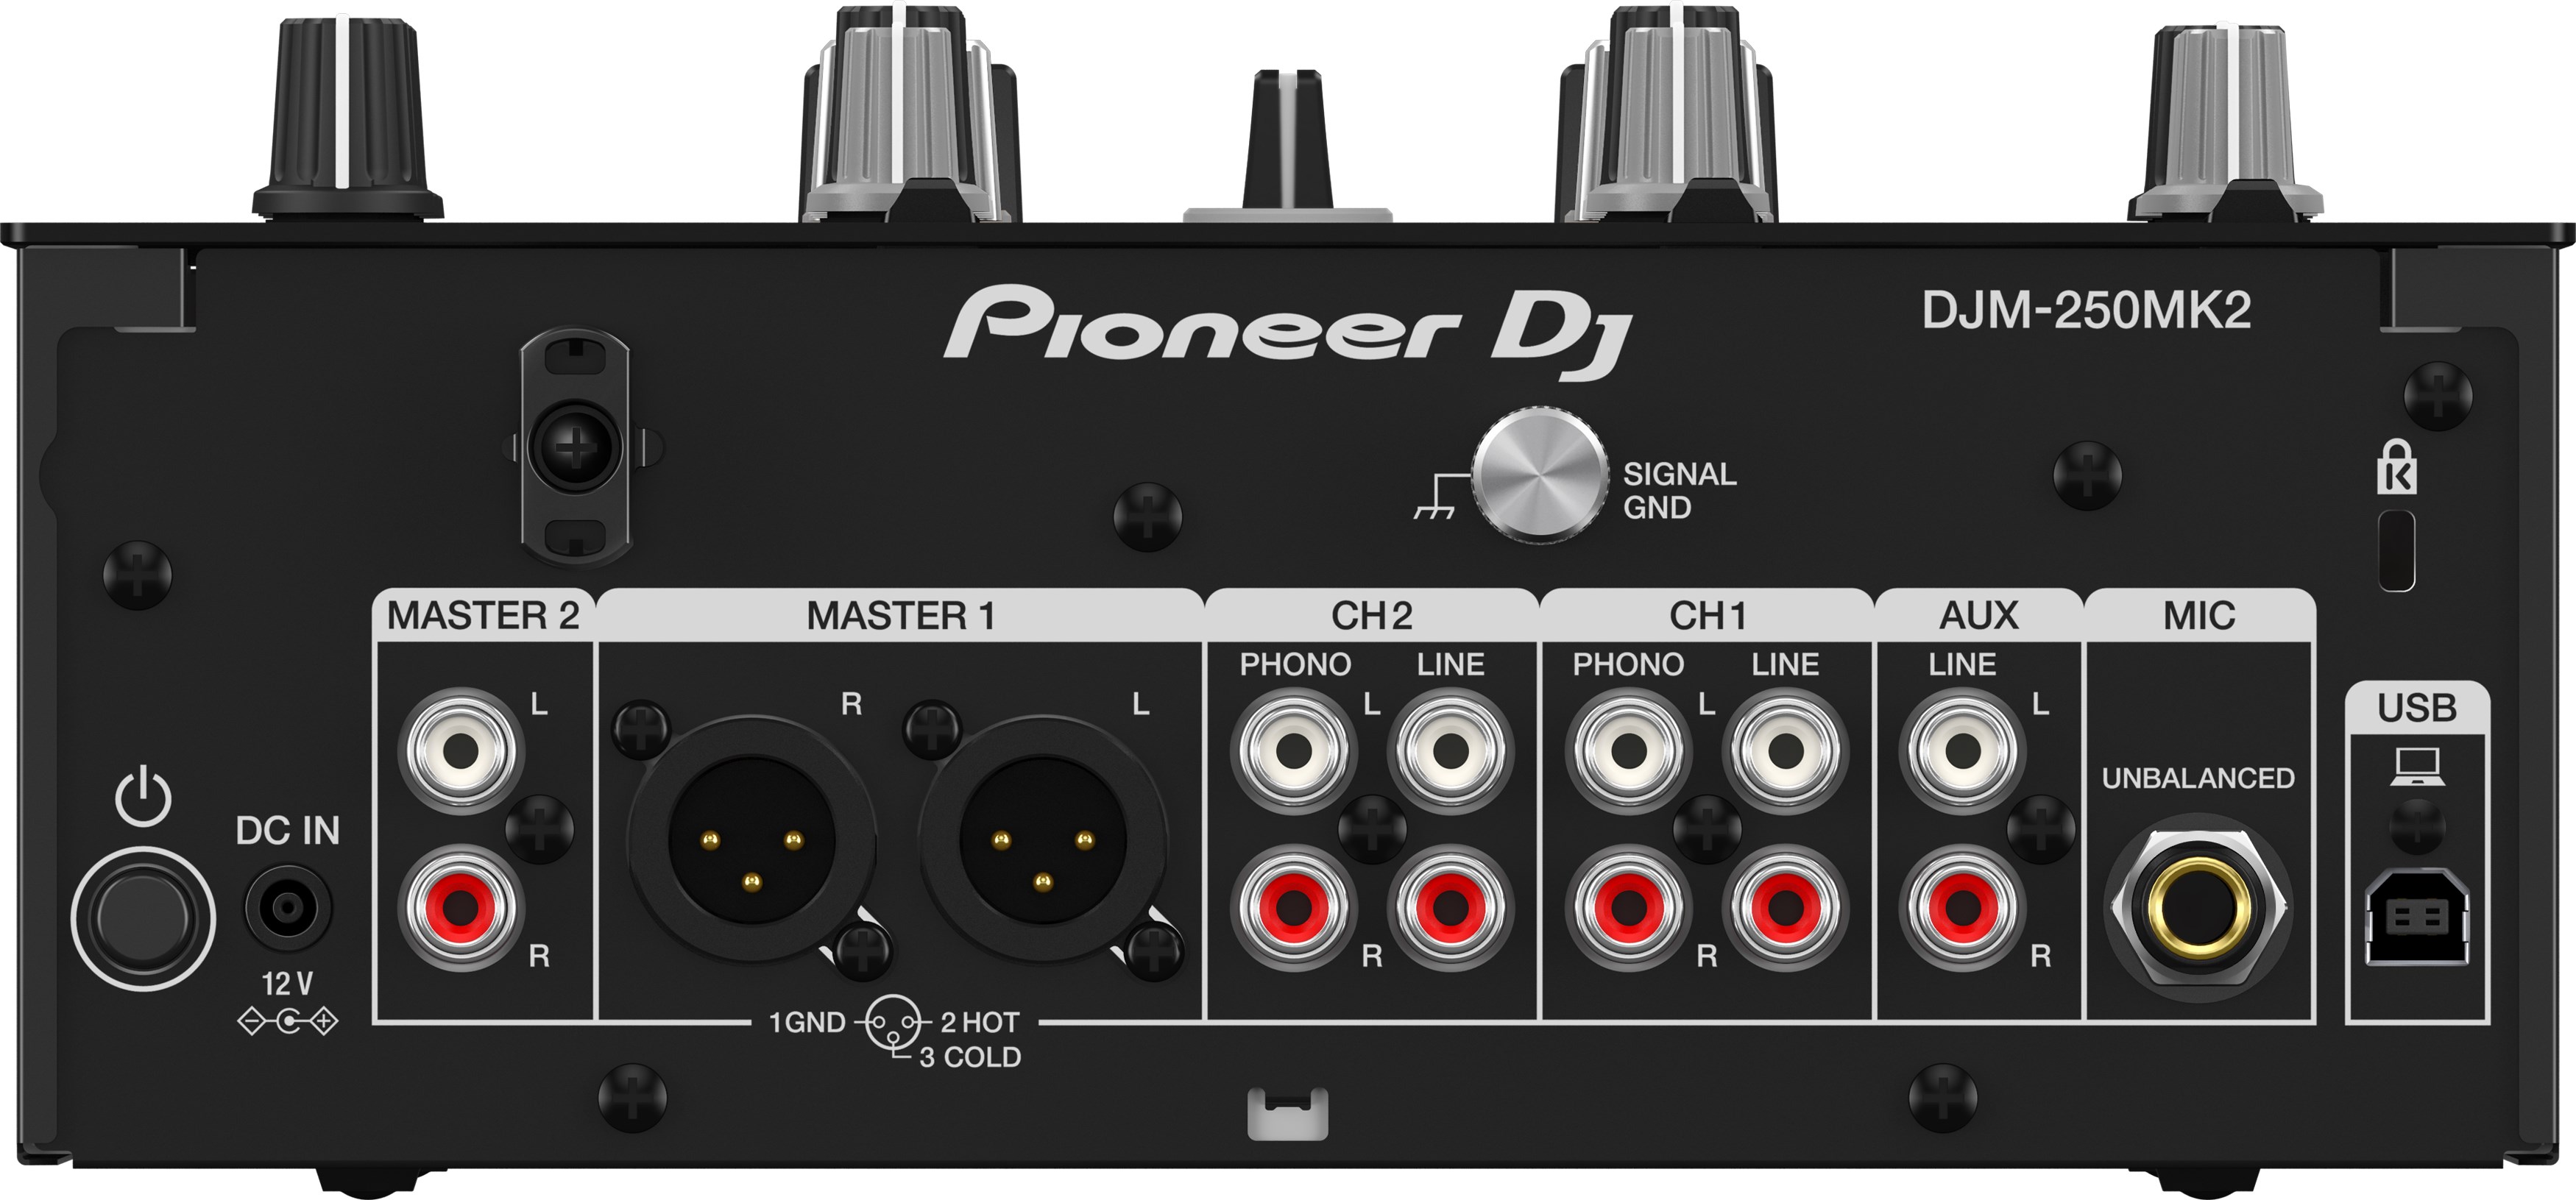 Pioneer Dj Djm-250mk2 - DJ mixer - Variation 1